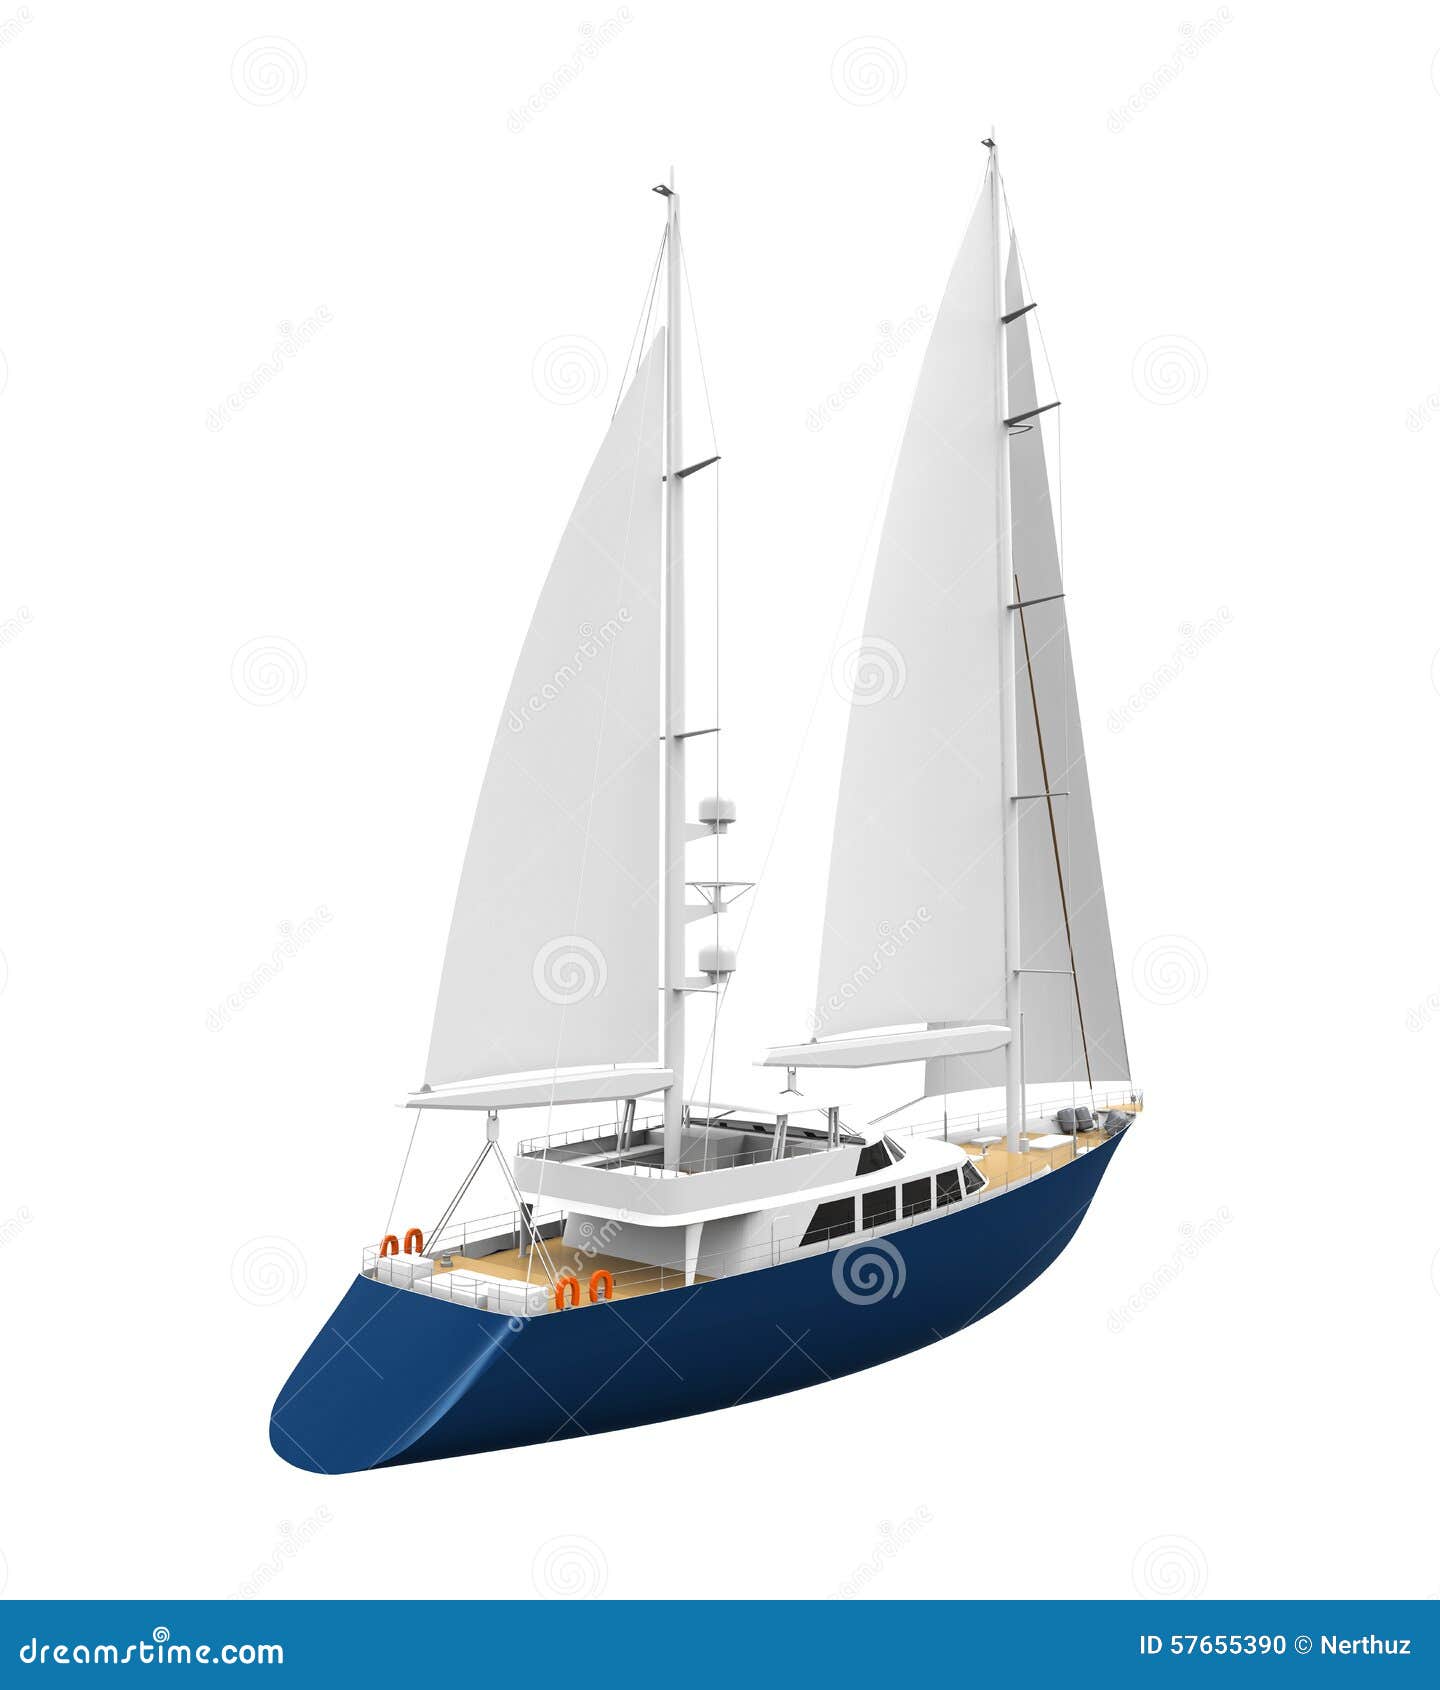 Sailing Yacht Isolated Stock Illustration - Image: 57655390